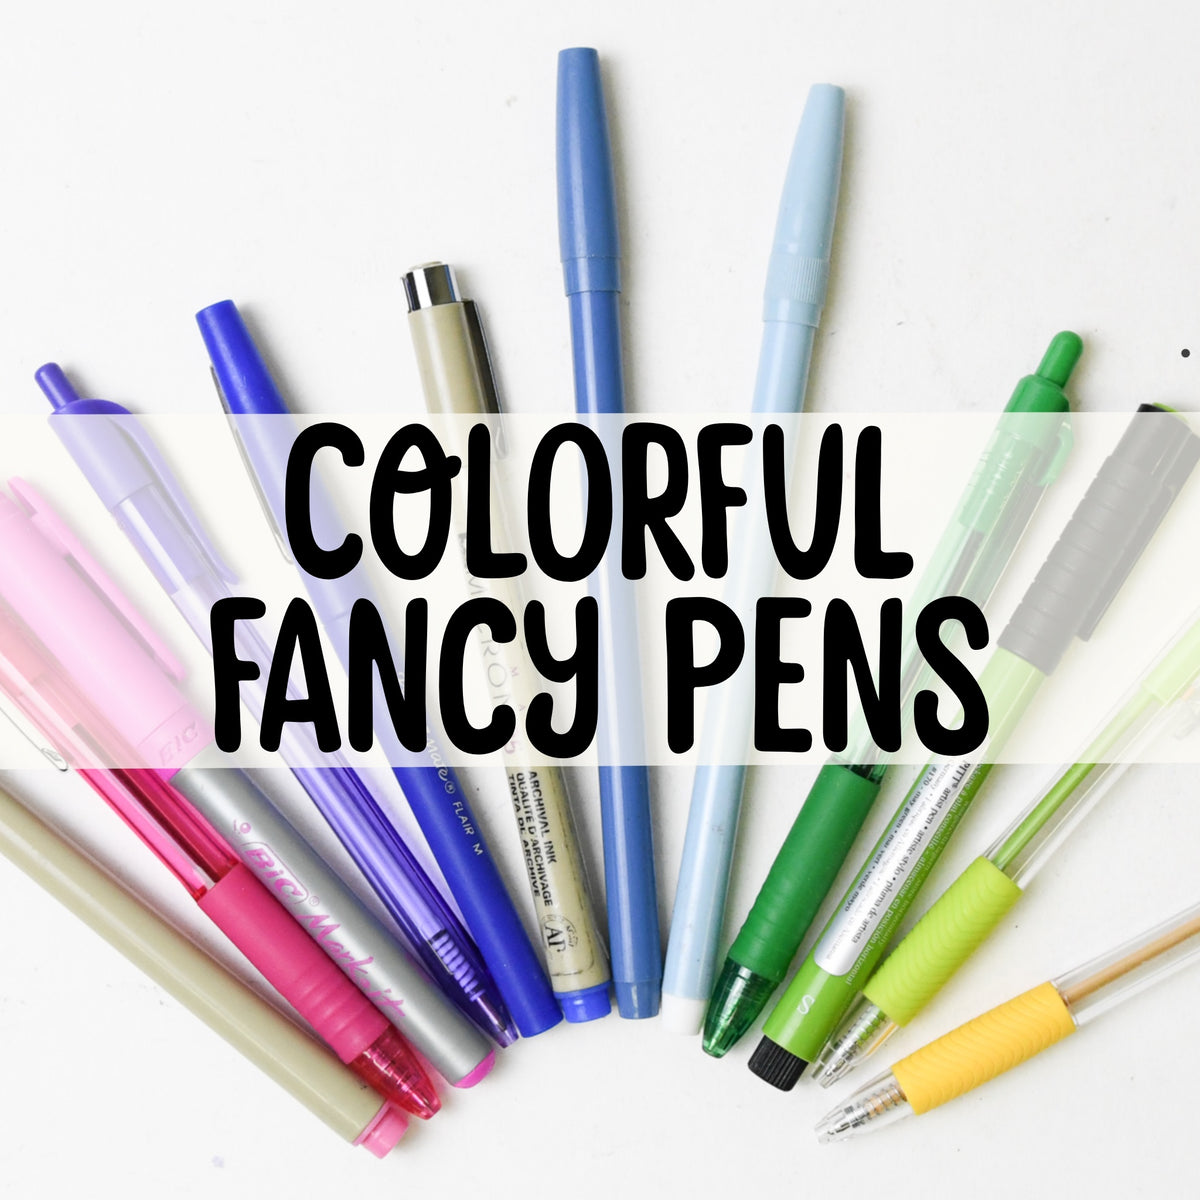 Fancy Pens